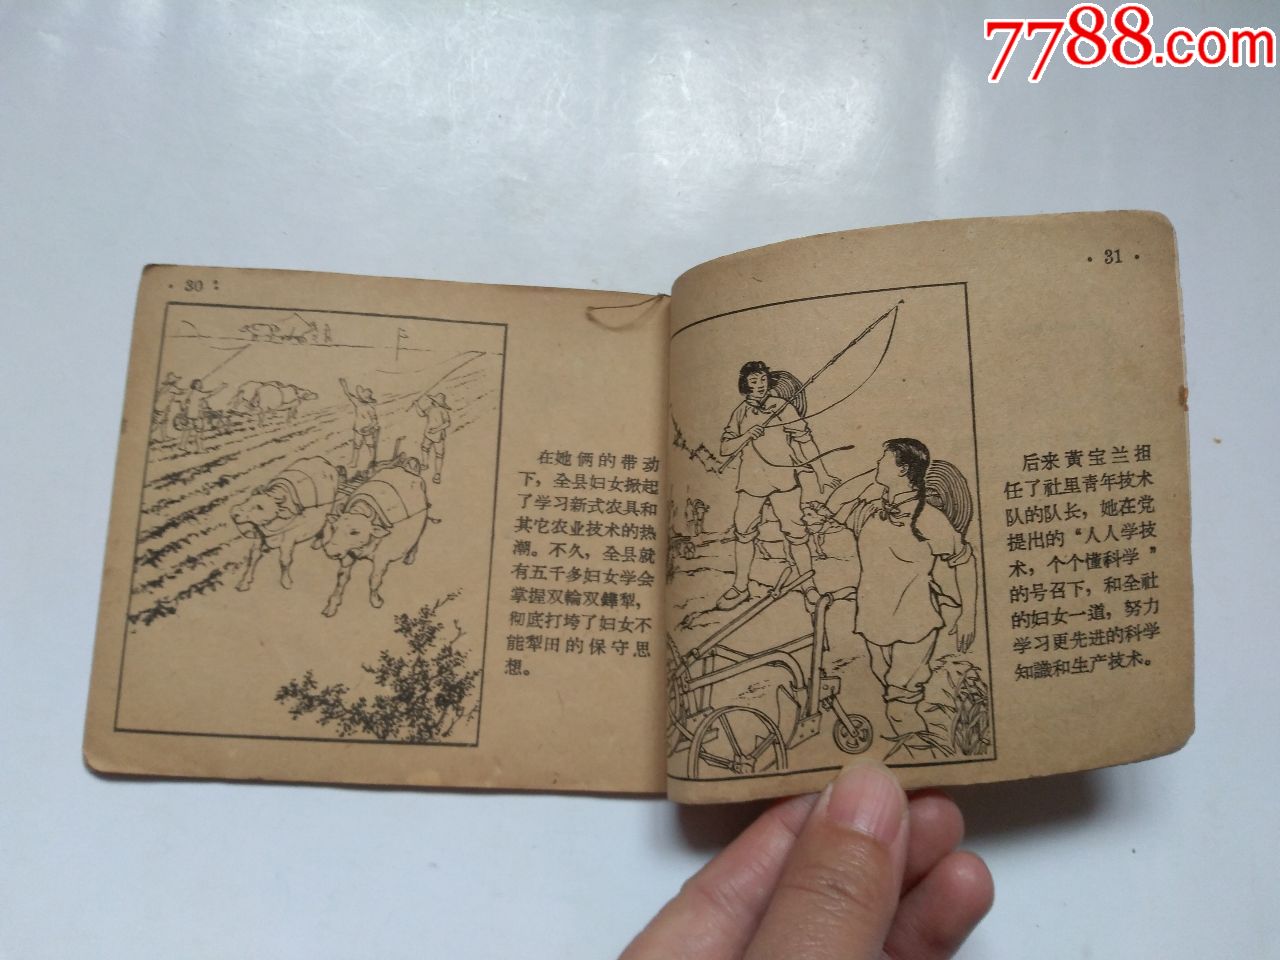 五十年代小人书,新式农具手(红旗画库之二),缺封面,其它见图,大缺本